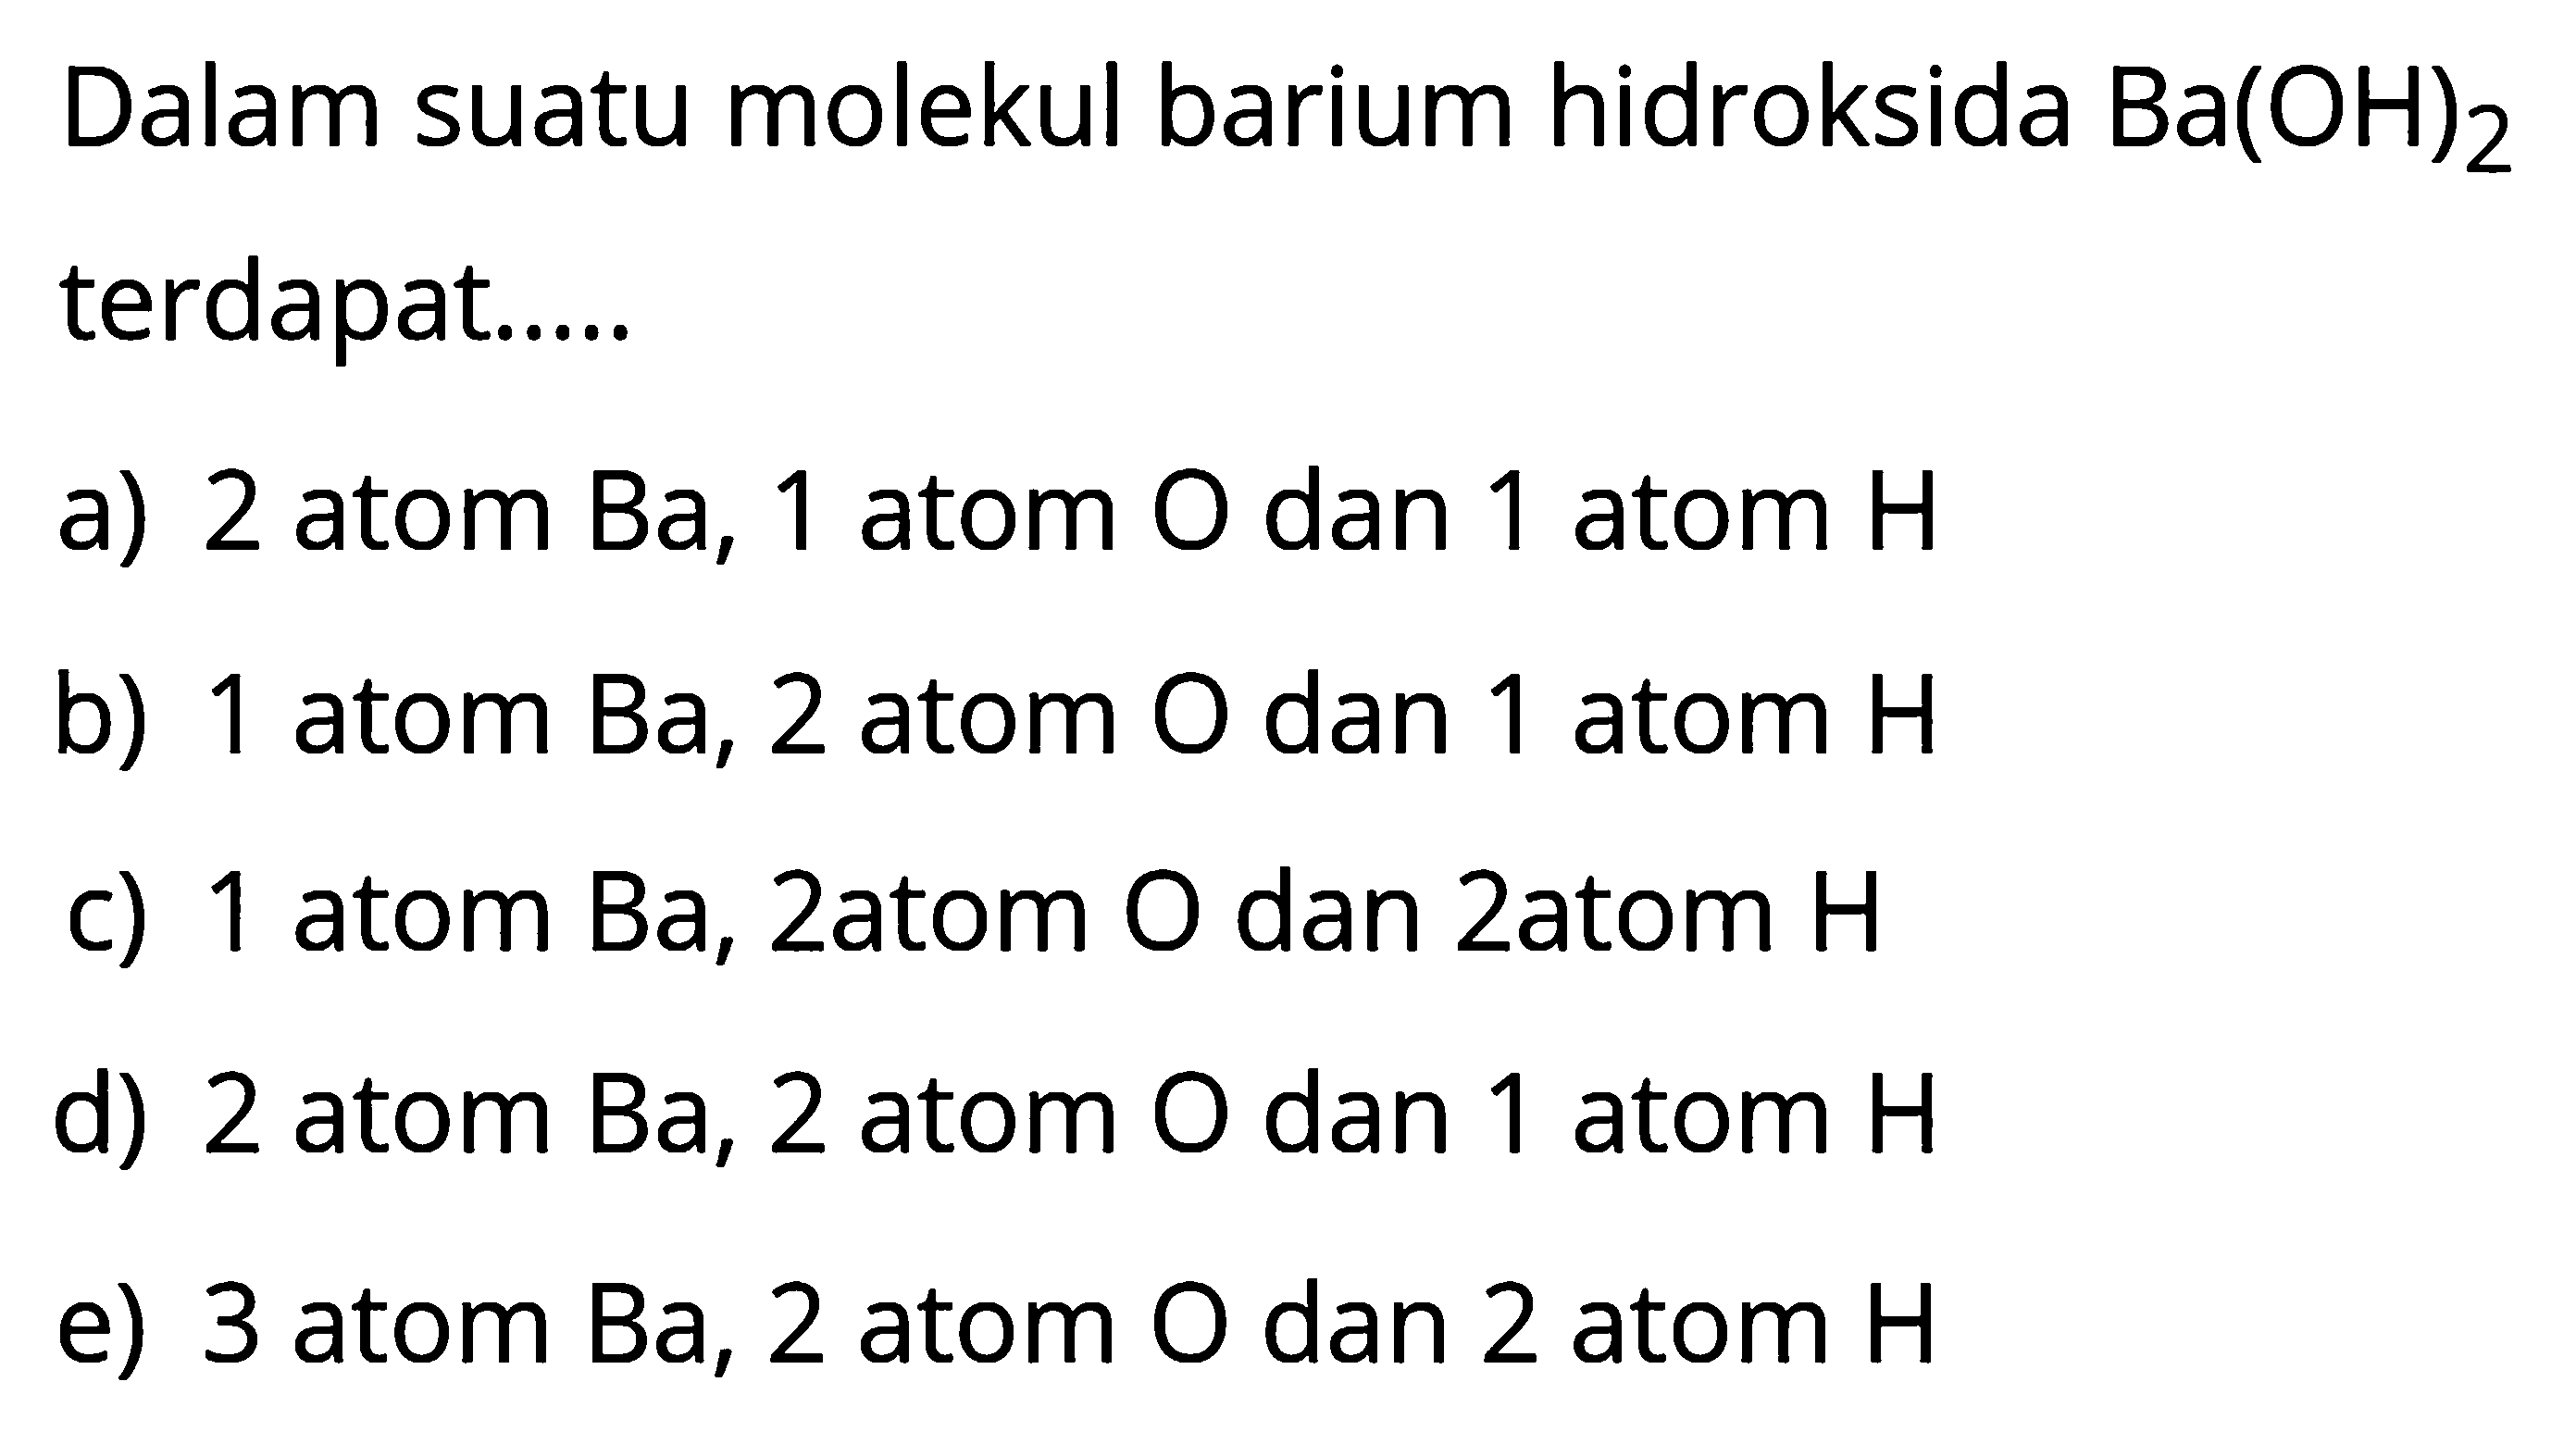 Dalam suatu molekul barium hidroksida Ba(OH)2 terdapat ...